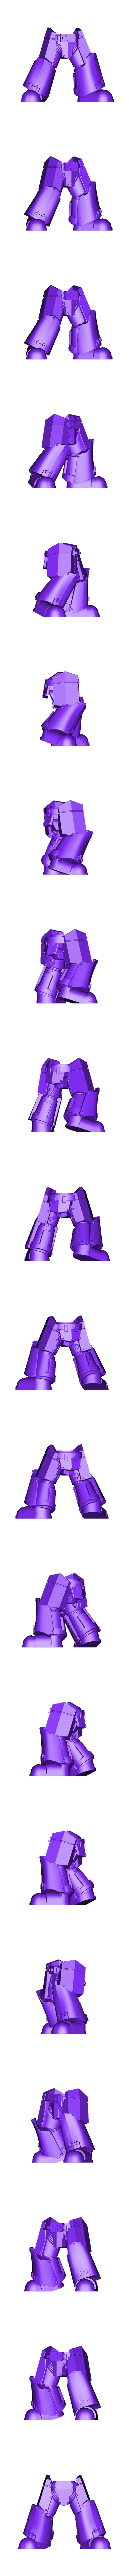 Legs Pose 1.stl Файл STL Тактические доспехи Rissole・Модель для загрузки и 3D печати, Craftos